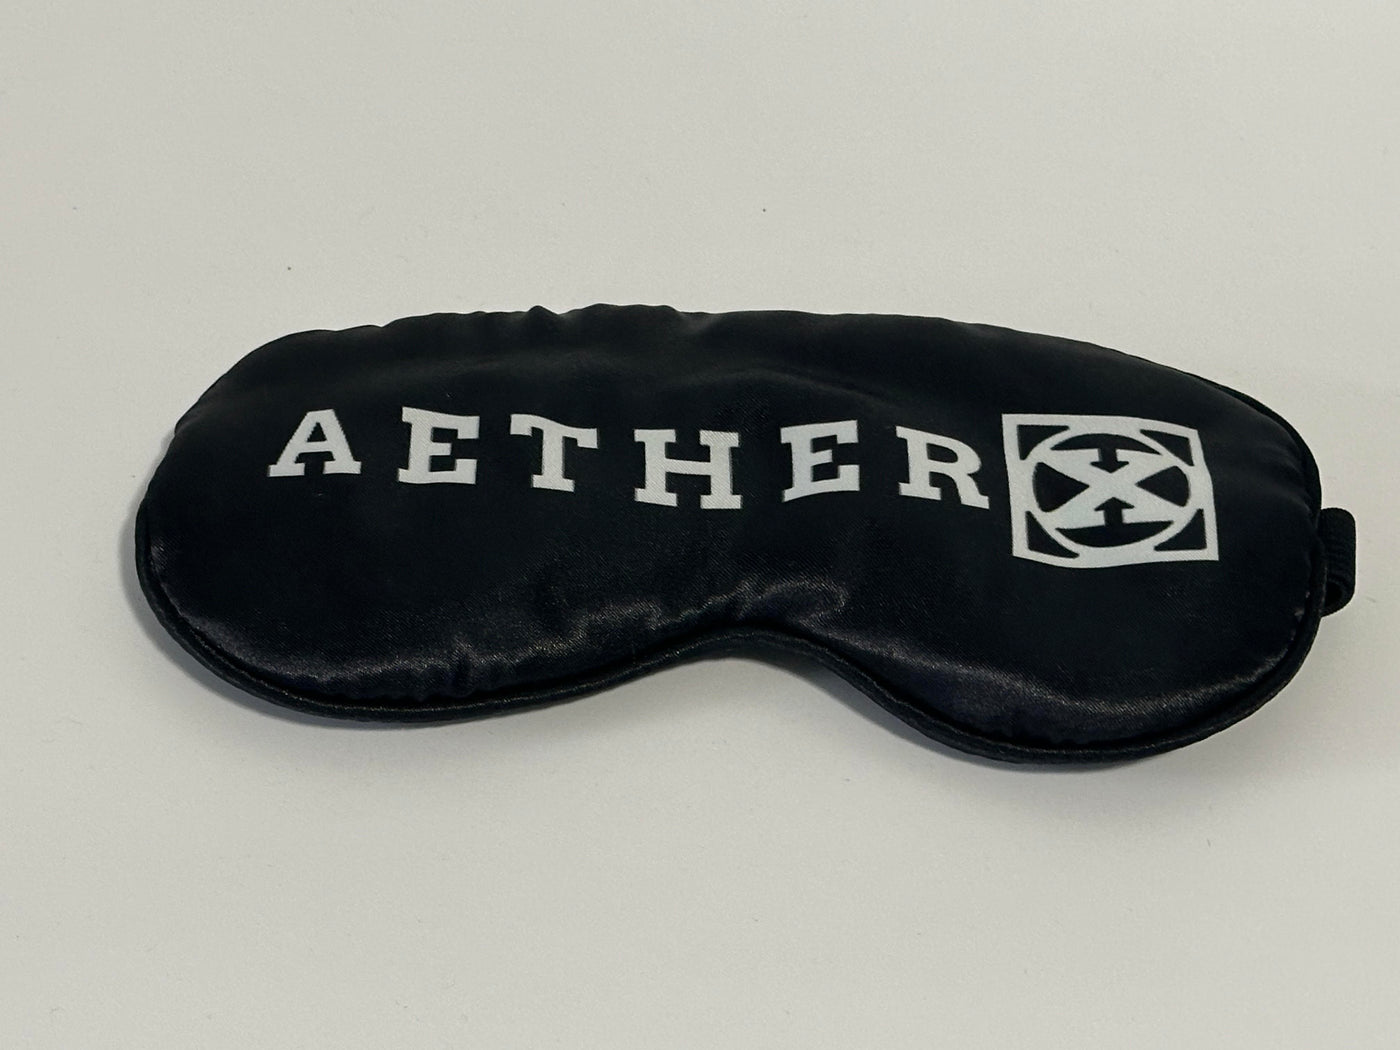 AetherX Visor Eye Masks